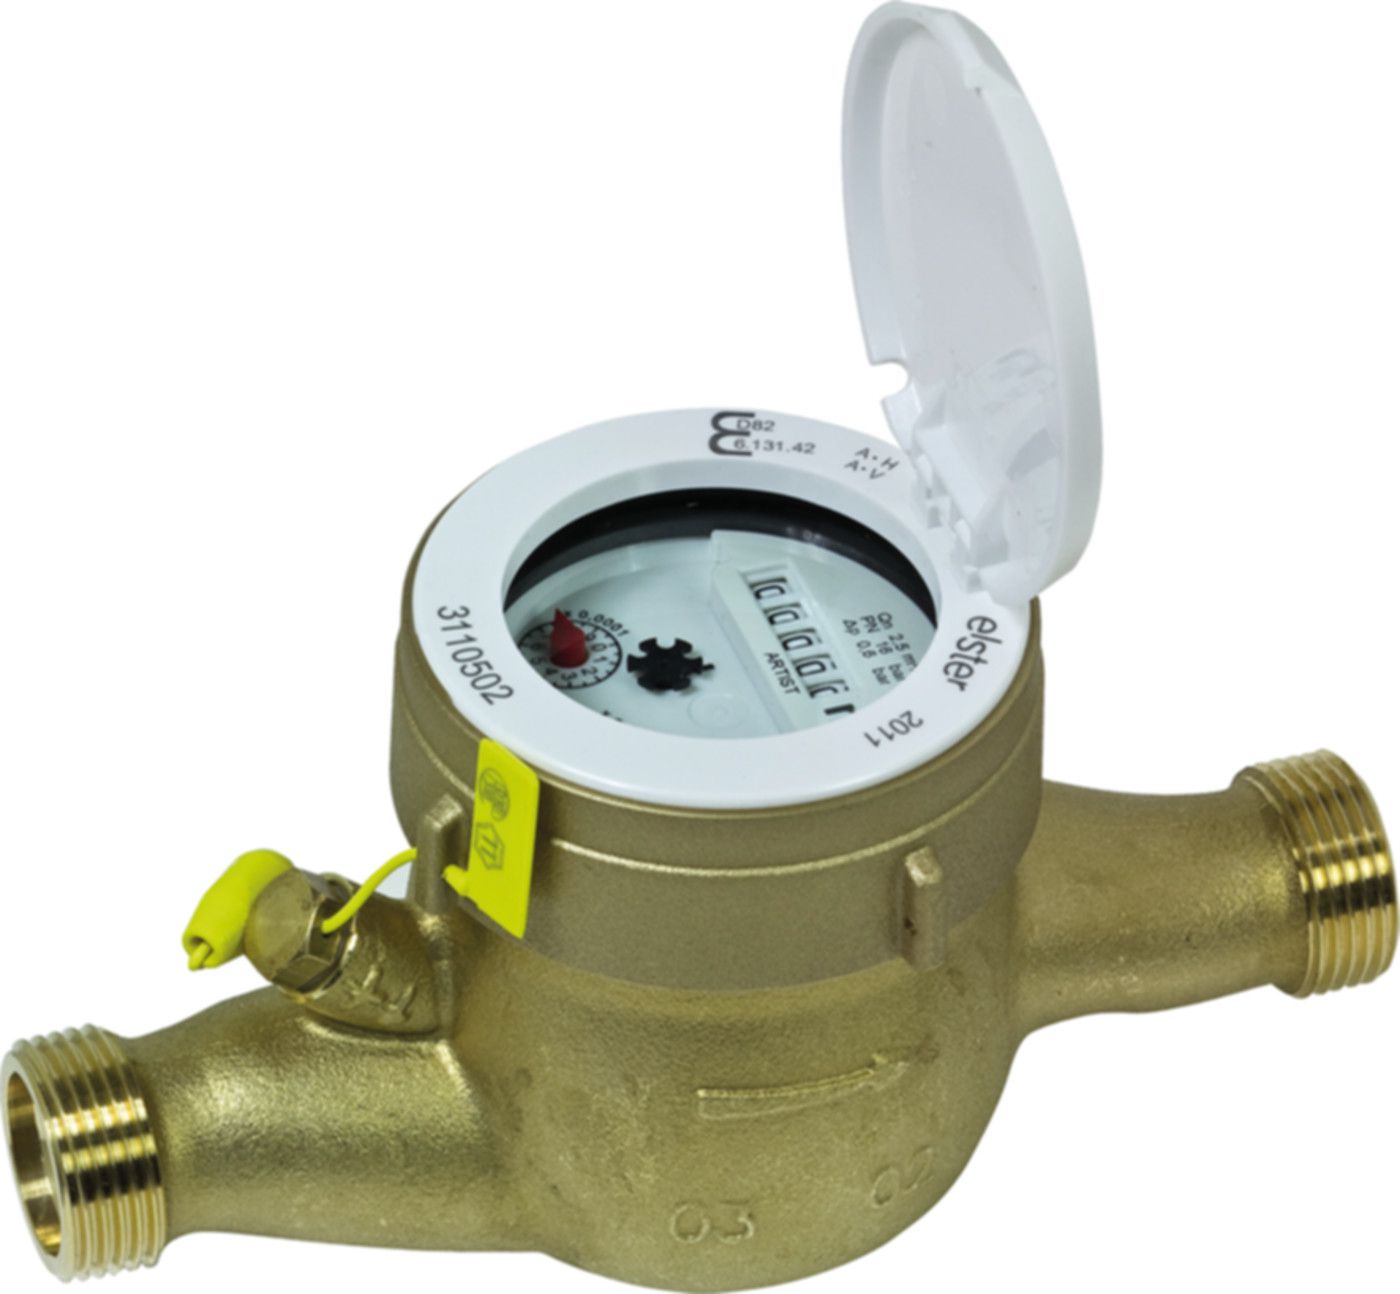 Hauswasserzähler kalt W/F 2.5 m3/h L = 190 mm G 1" blombiert 16776 - ISTA - Wärme- / Wasserzähler